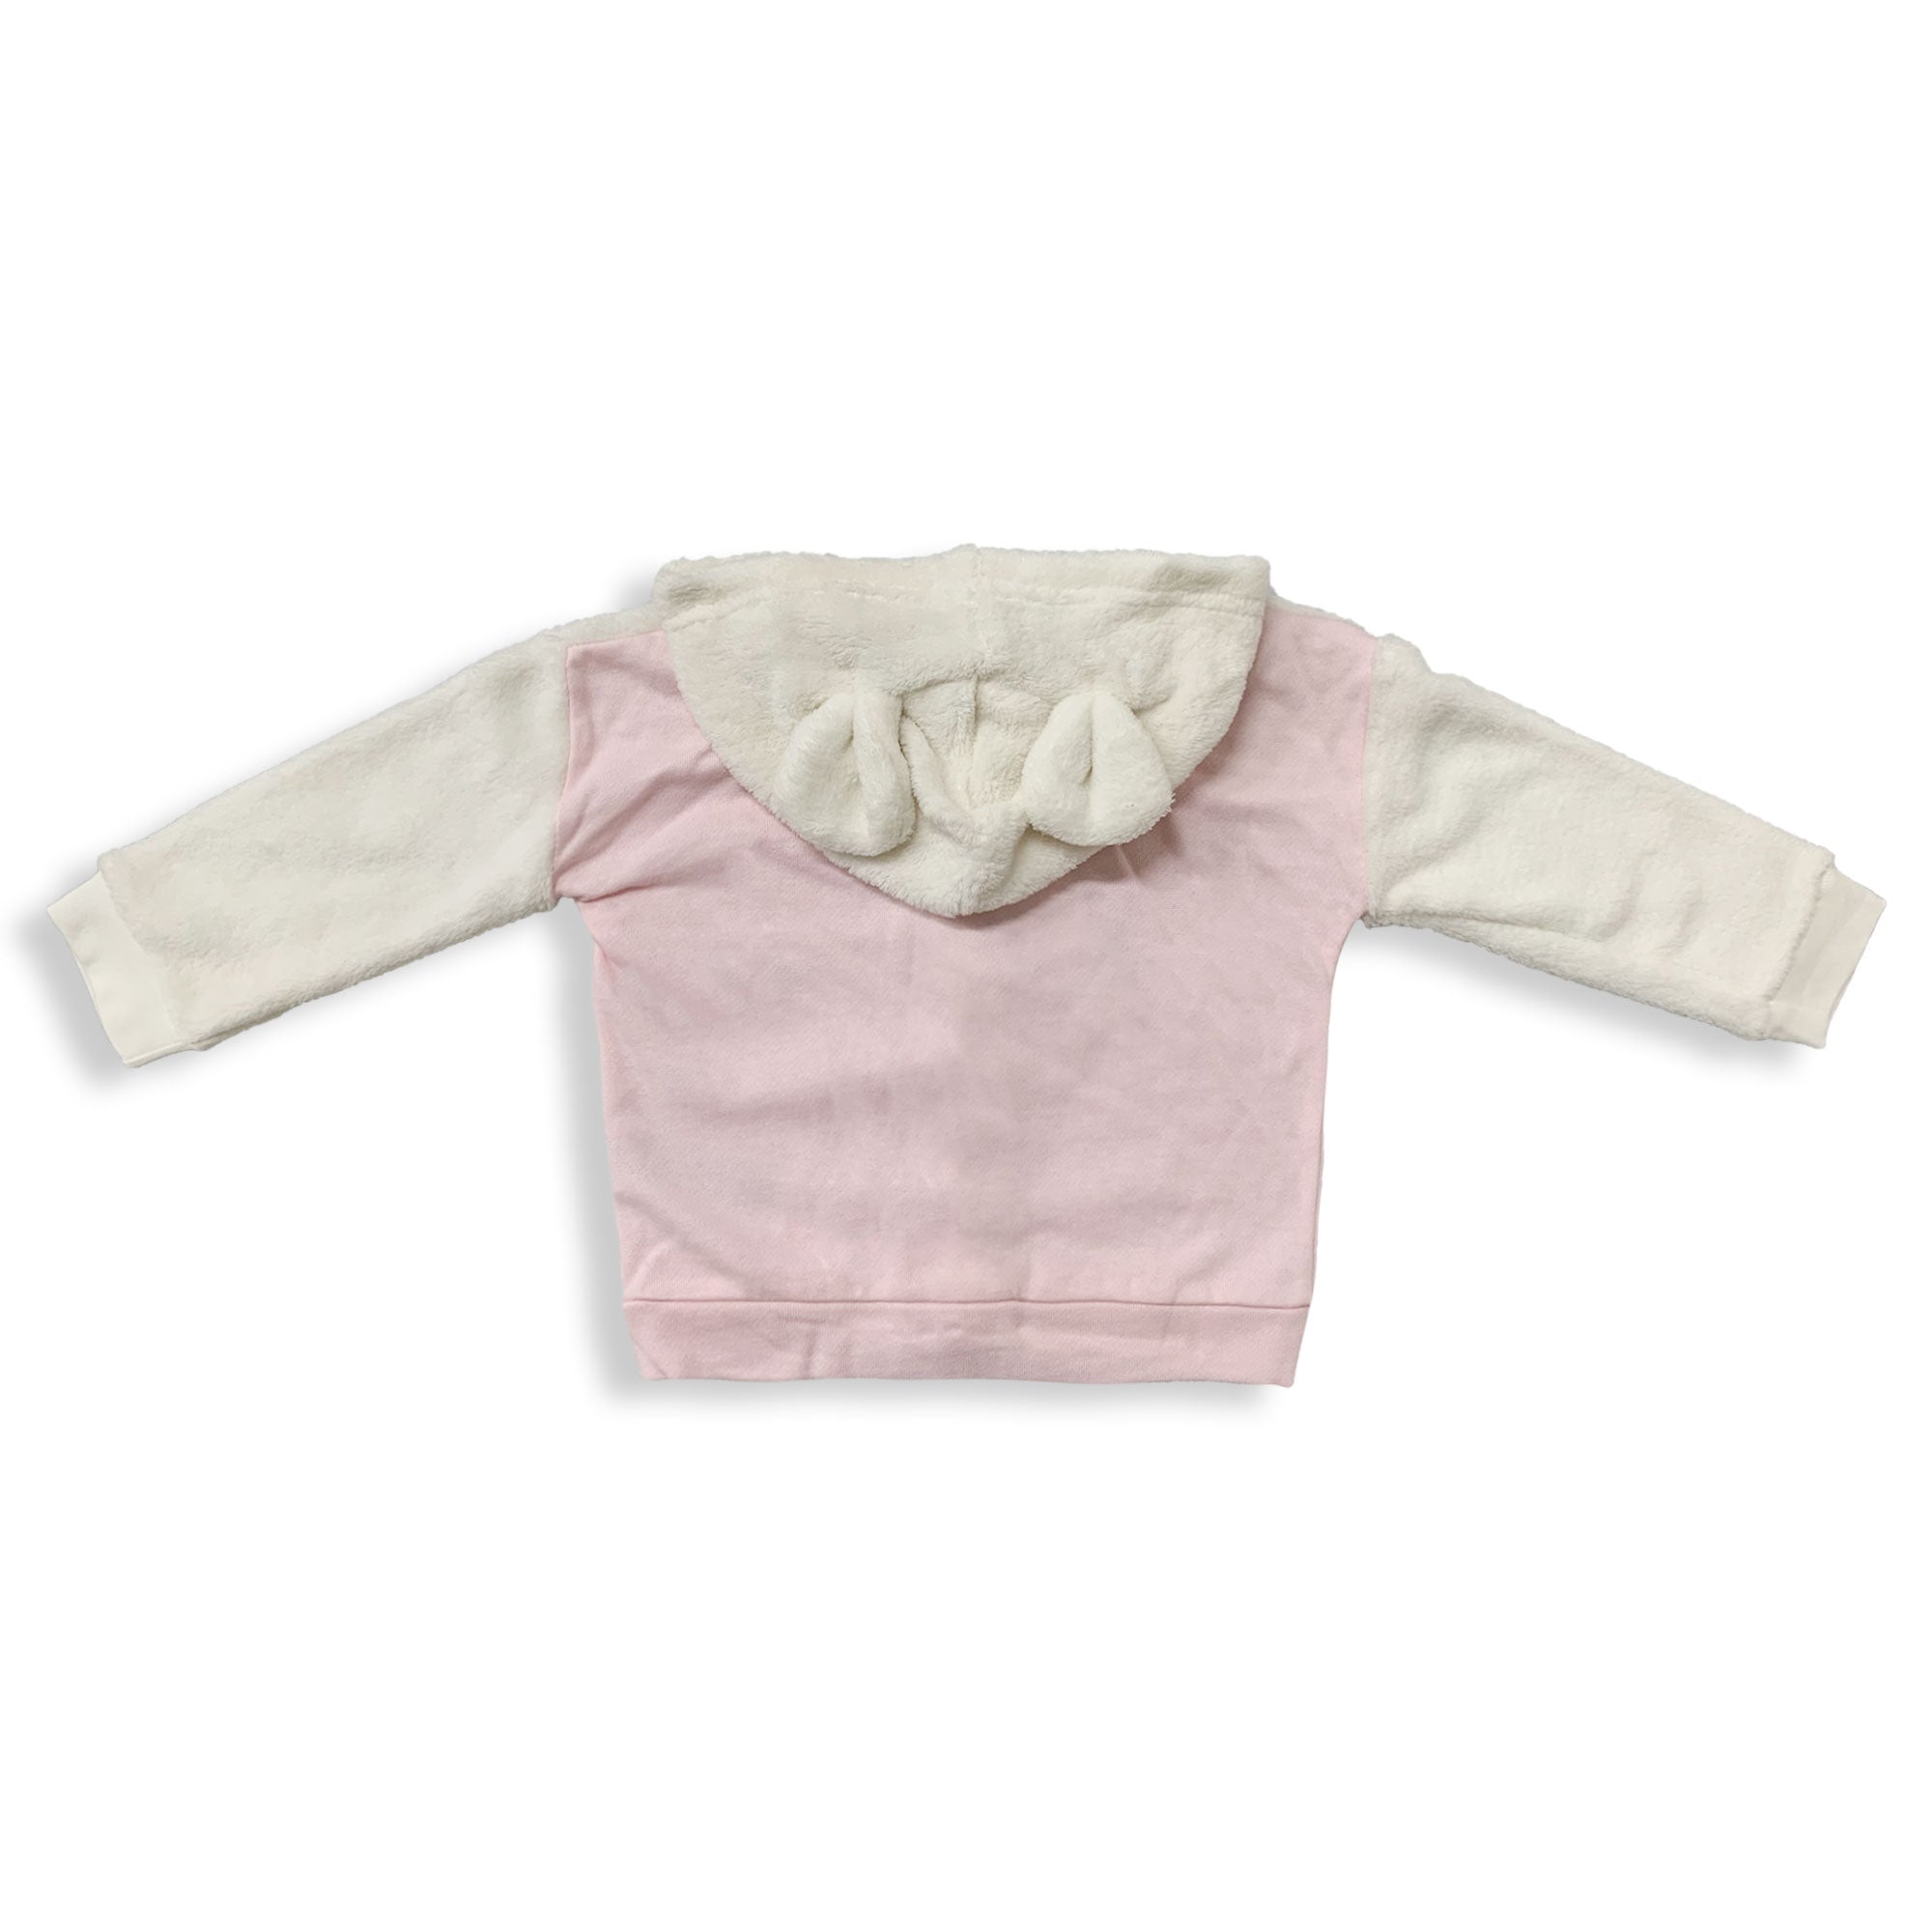 Felpa neonato invernale Disney Minnie Mouse maglia Bimba con cappuccio zip 5893